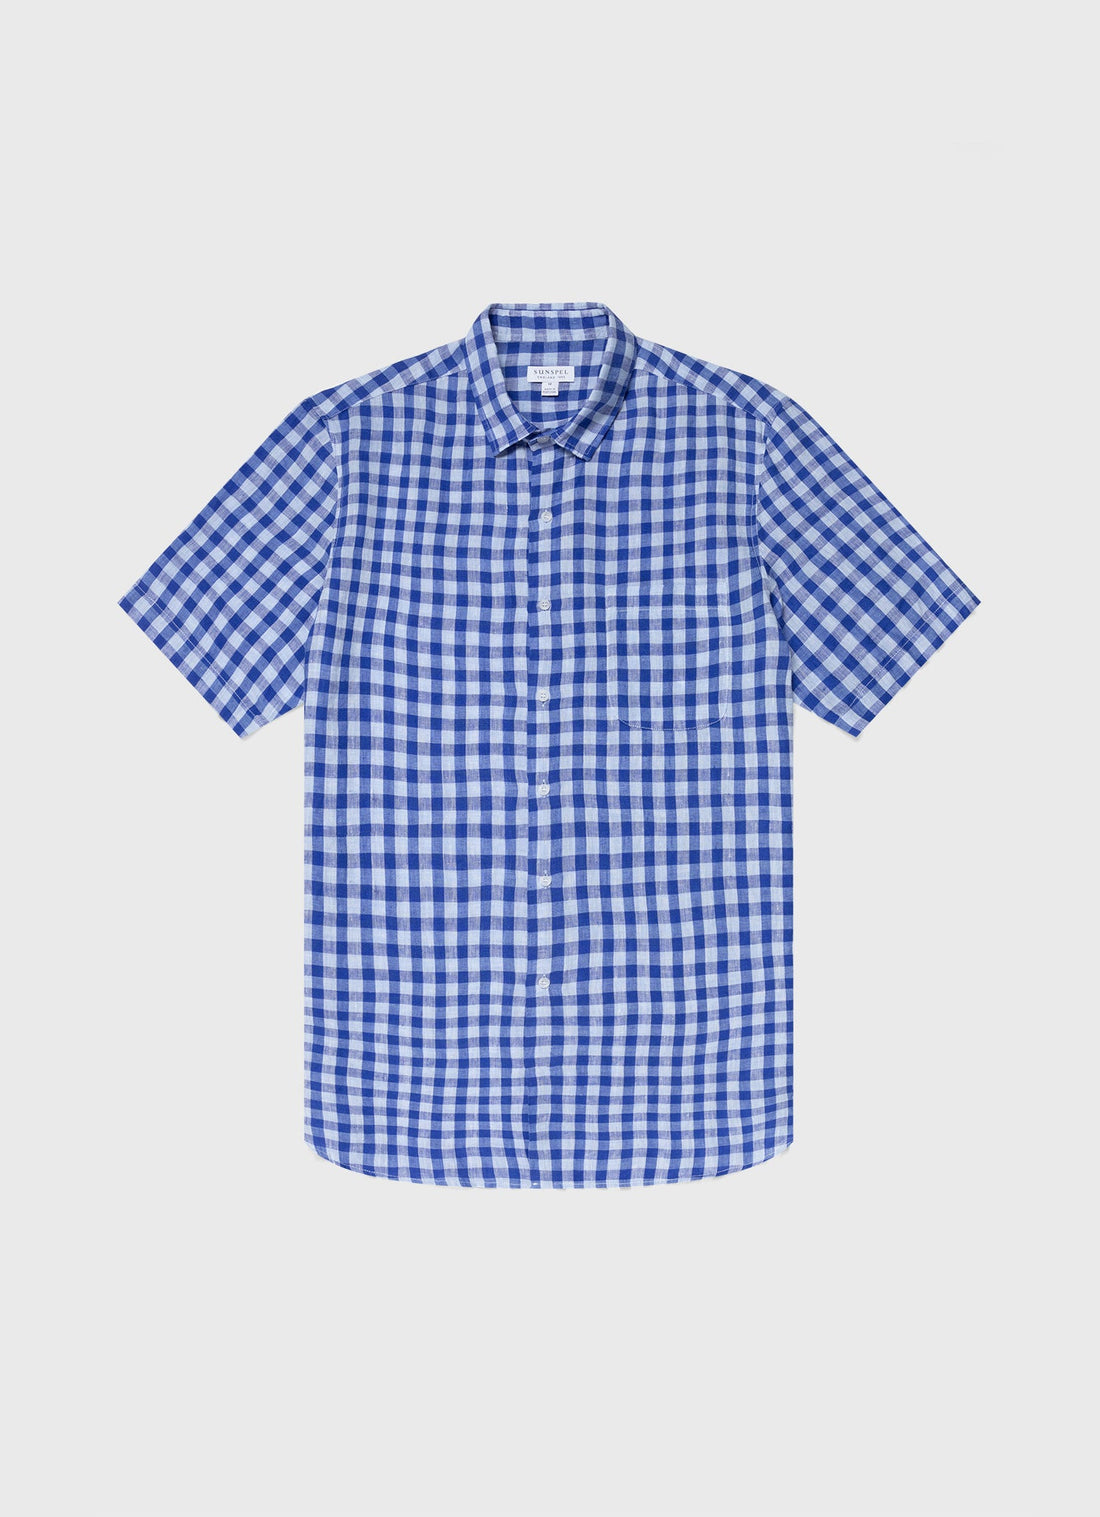 Men's Short Sleeve Linen Shirt in Blue Gingham